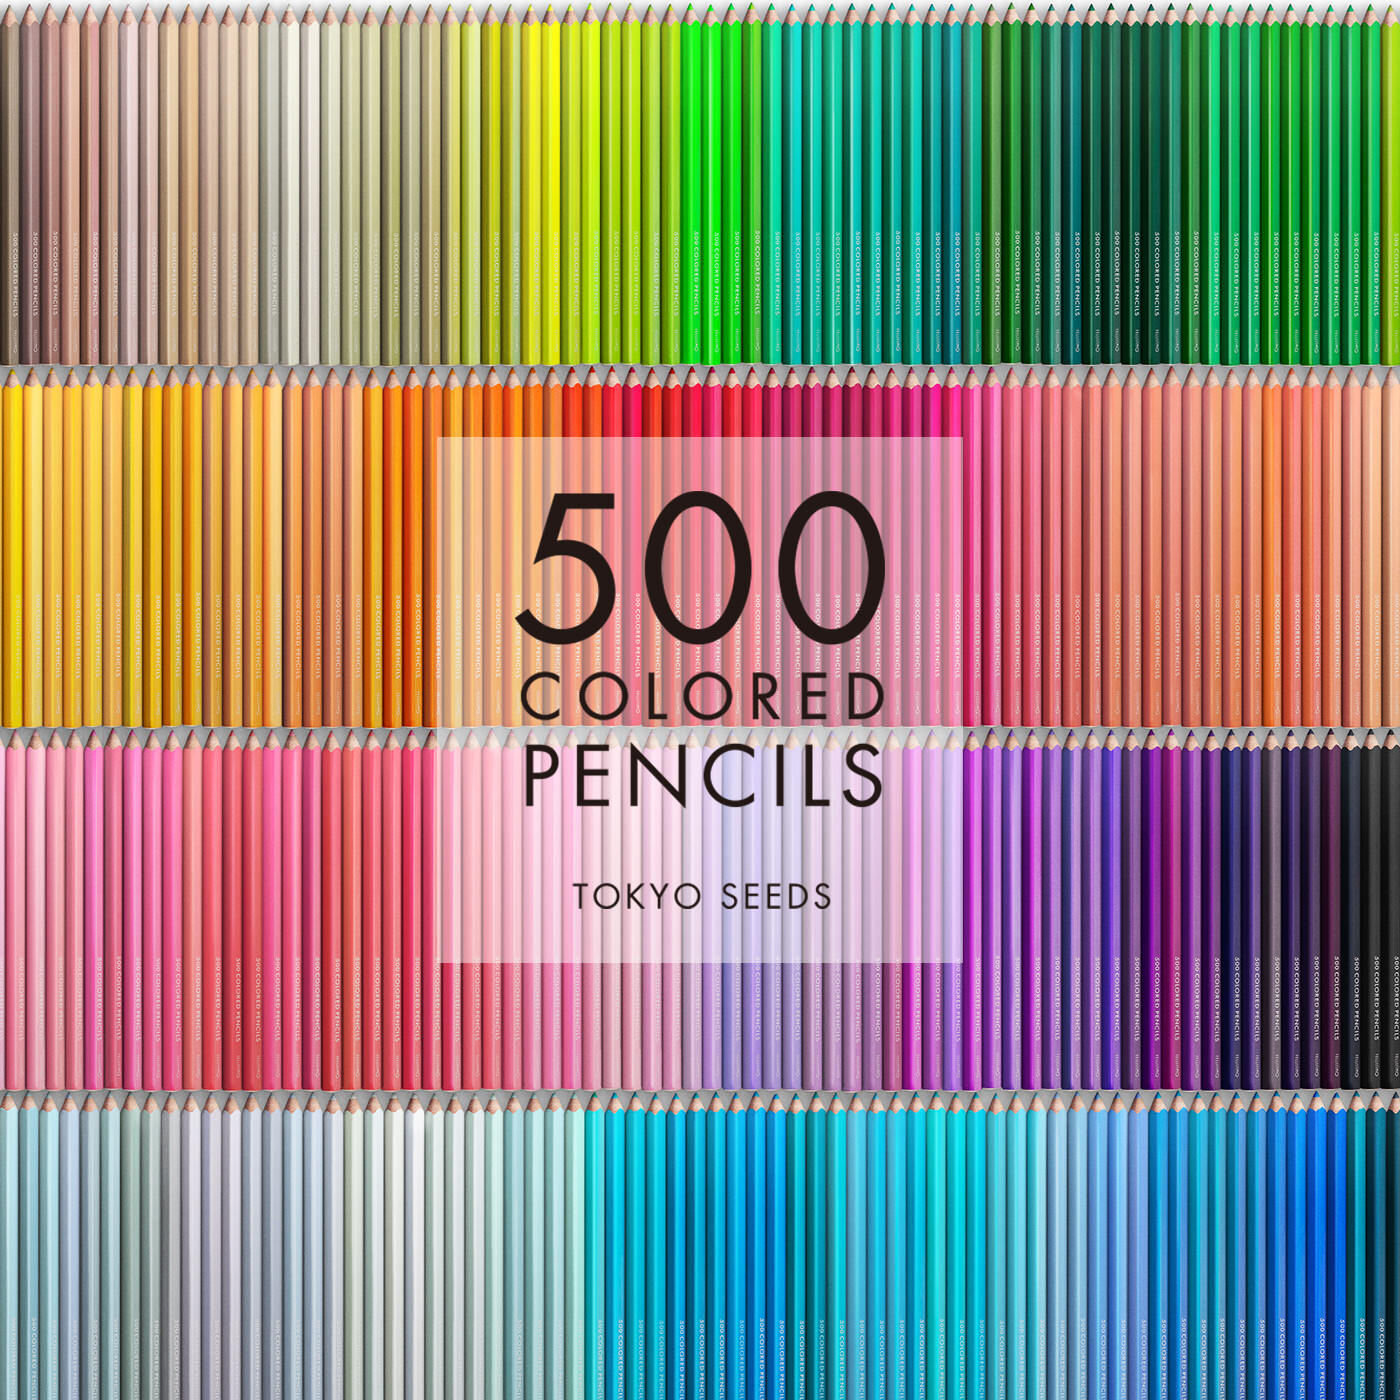 Real Stock|【293/500 MARIGOLD MAGIC】500色の色えんぴつ TOKYO SEEDS|1992年、世界初の「500色」という膨大な色数の色えんぴつが誕生して以来、その販売数は発売当初から合わせると、世界55ヵ国10万セット以上。今回、メイド・イン・ジャパンにこだわり、すべてが新しく生まれ変わって登場しました。